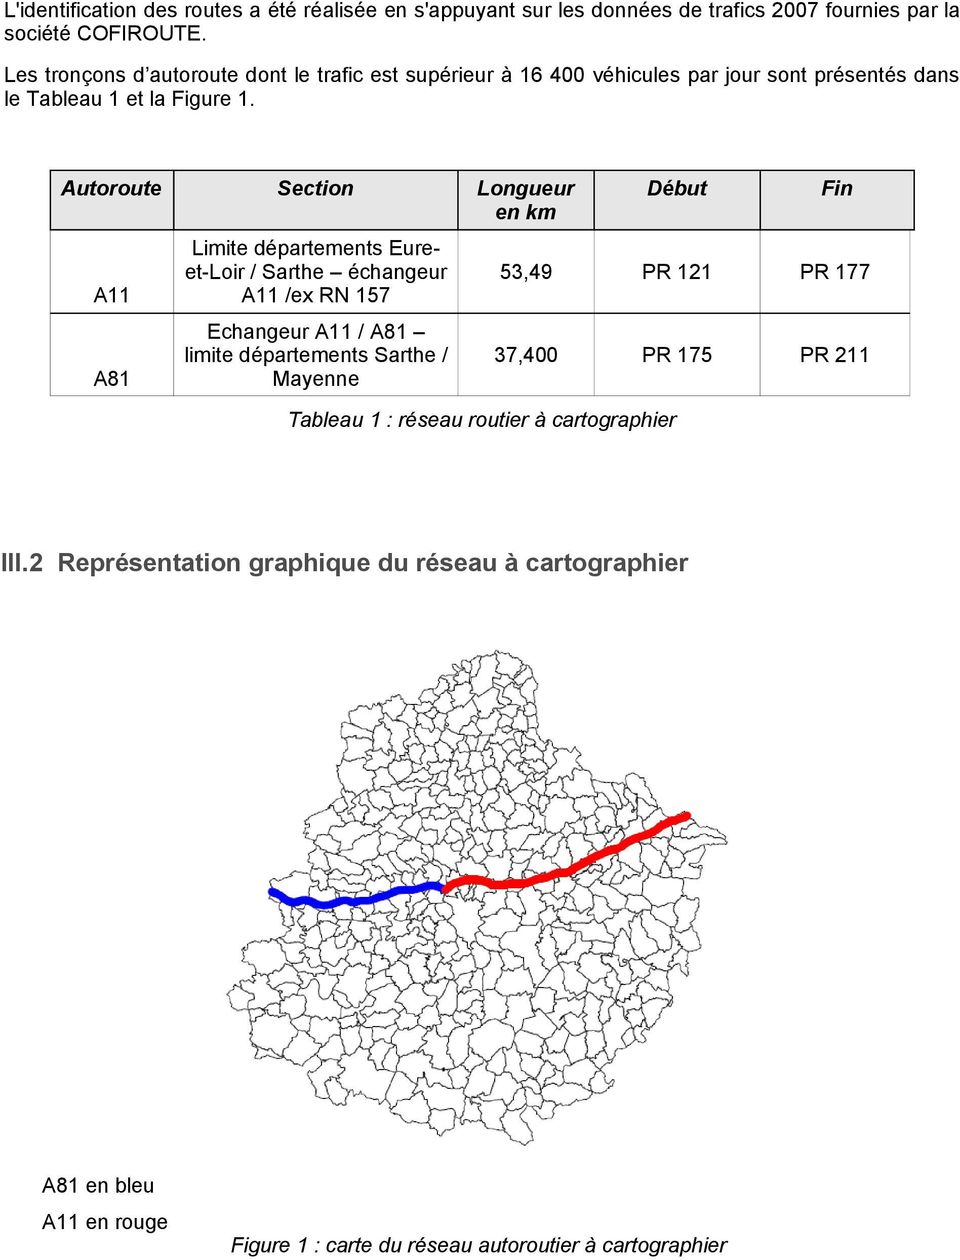 Autoroute Section Longueur en km Limite départements Eureet-Loir / Sarthe échangeur /ex RN 157 Echangeur / limite départements Sarthe / Mayenne Tableau 1 :